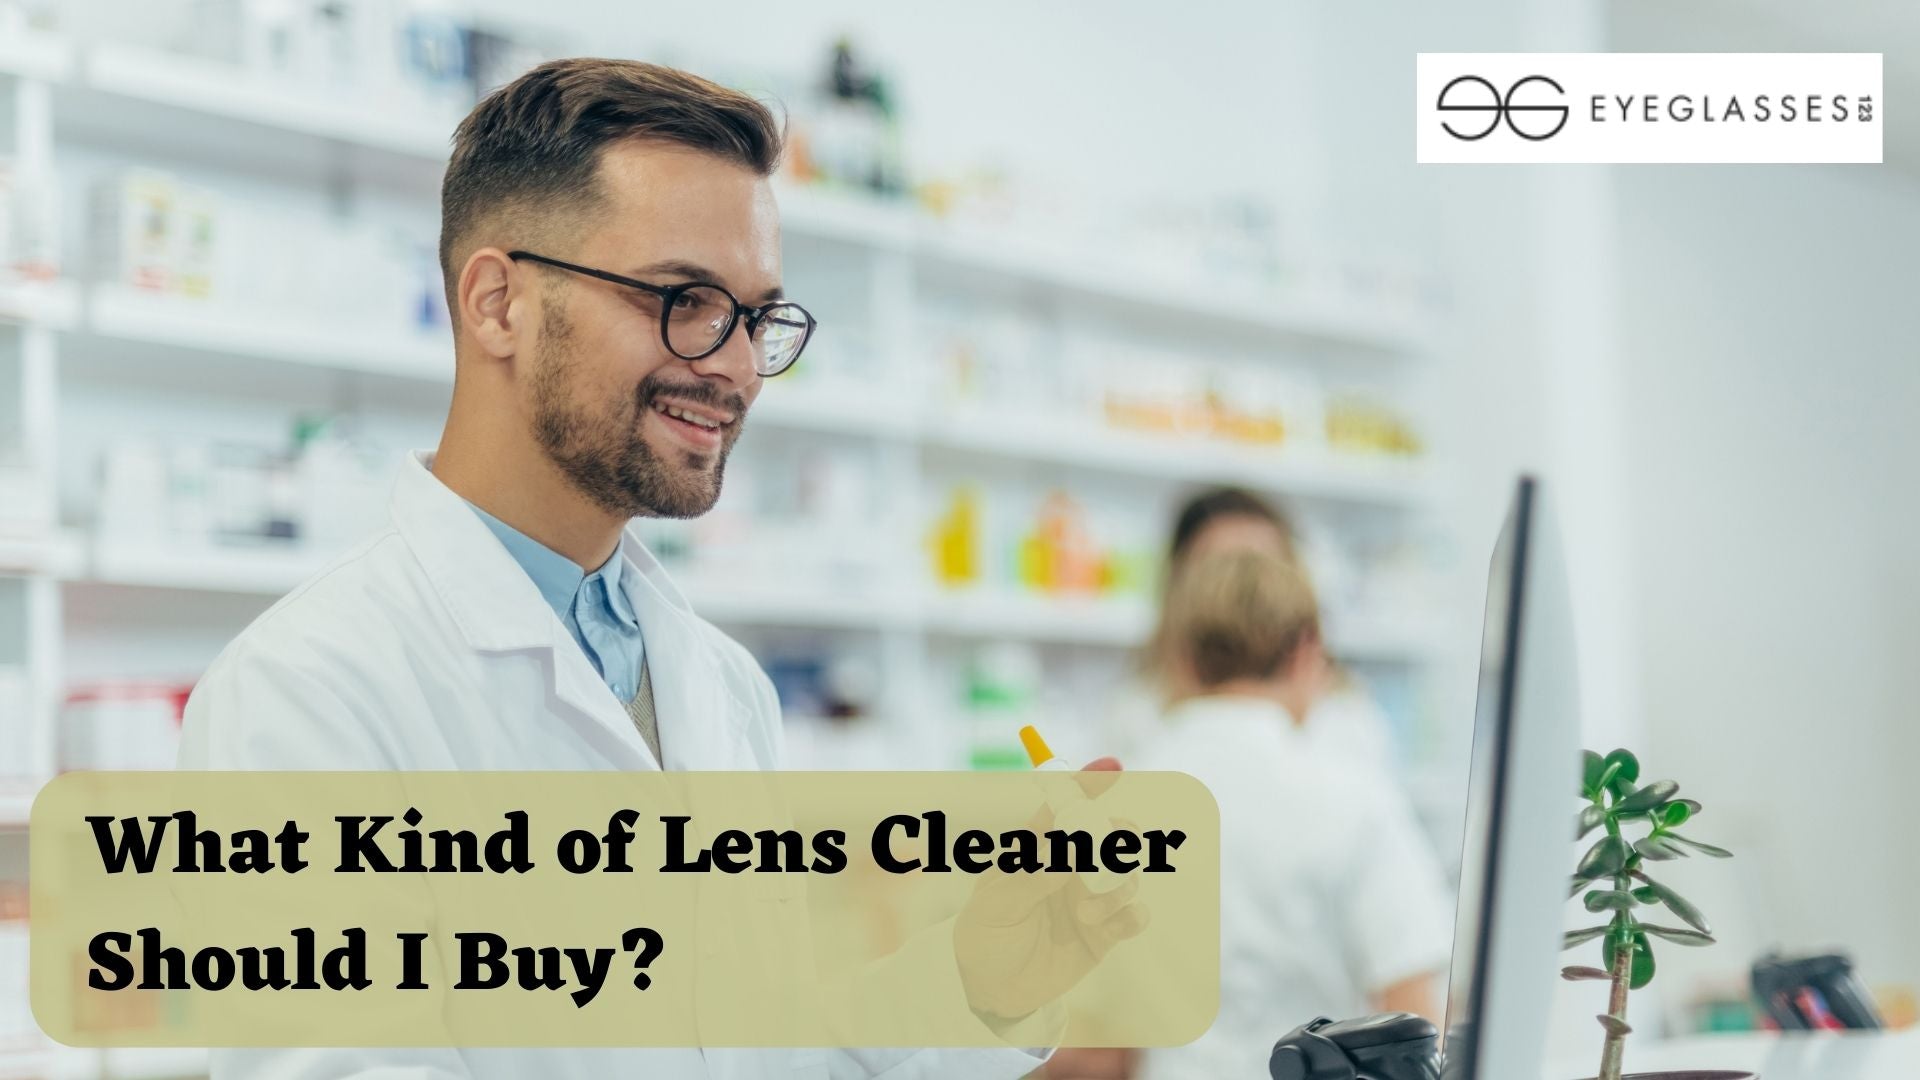 What Kind of Lens Cleaner Should I Buy?